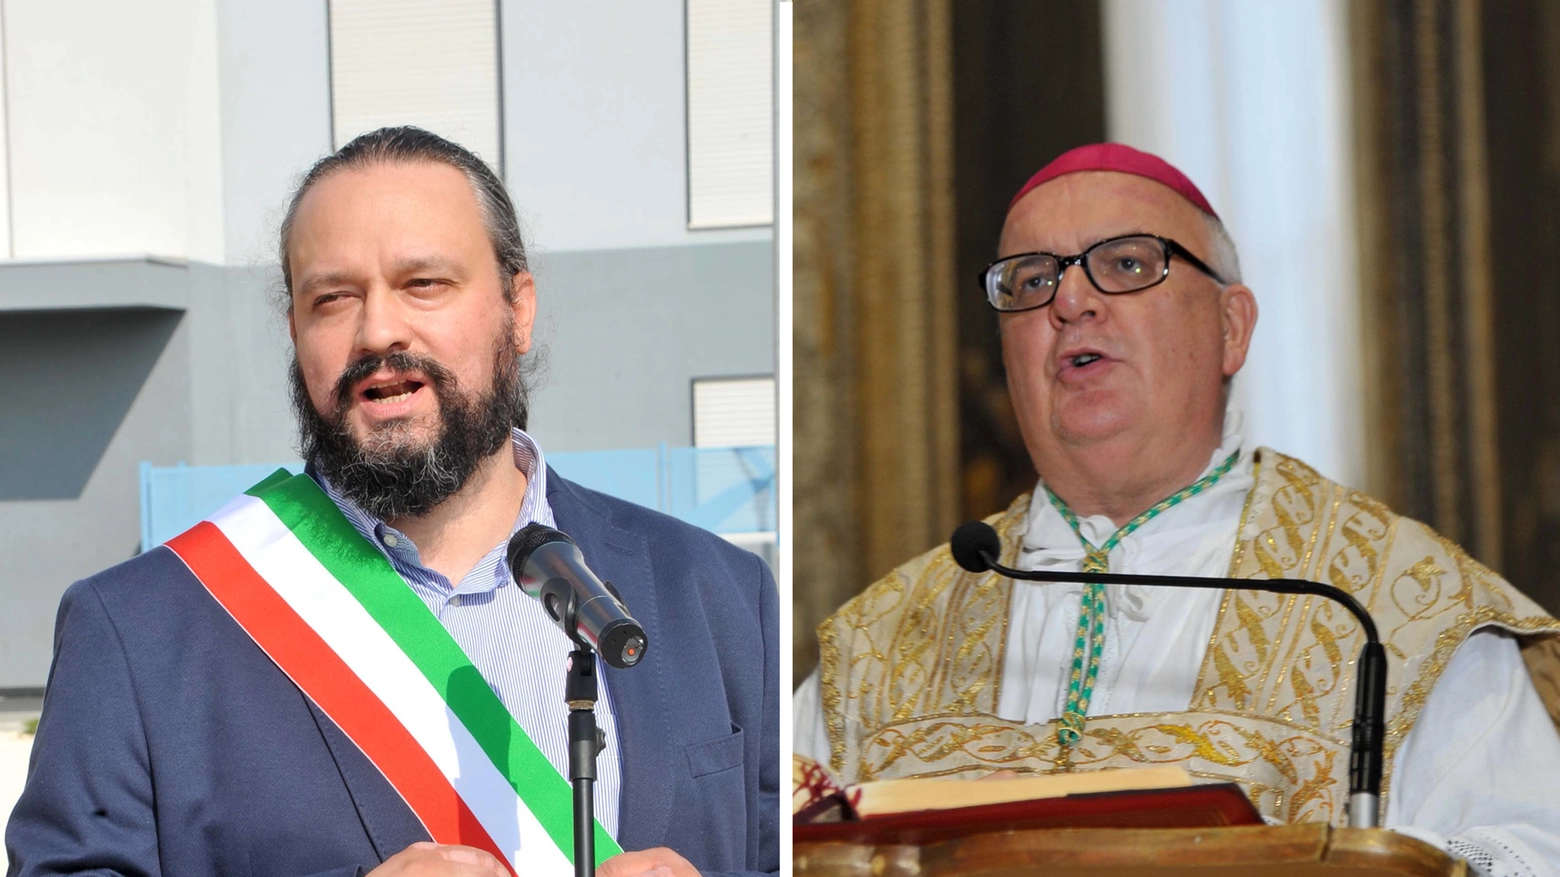 I nuovi parametri per l’assegnazione, il botta e risposta tra il sindaco Fabbri e l’arcivescovo Perego: perché si litiga